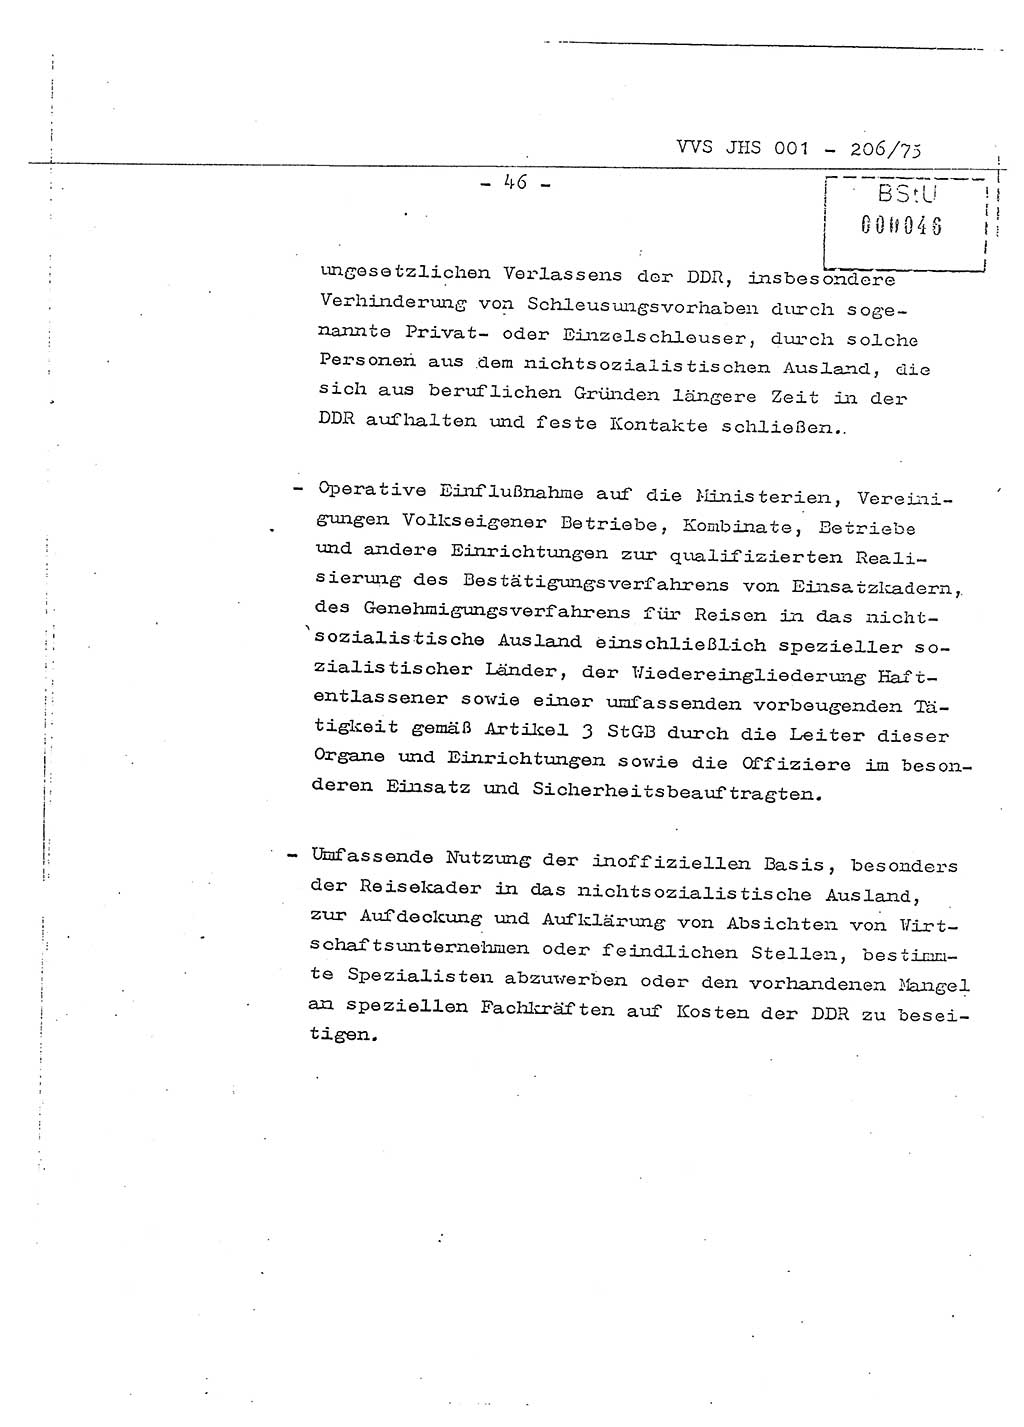 Dissertation Generalmajor Manfred Hummitzsch (Leiter der BV Leipzig), Generalmajor Heinz Fiedler (HA Ⅵ), Oberst Rolf Fister (HA Ⅸ), Ministerium für Staatssicherheit (MfS) [Deutsche Demokratische Republik (DDR)], Juristische Hochschule (JHS), Vertrauliche Verschlußsache (VVS) 001-206/75, Potsdam 1975, Seite 46 (Diss. MfS DDR JHS VVS 001-206/75 1975, S. 46)